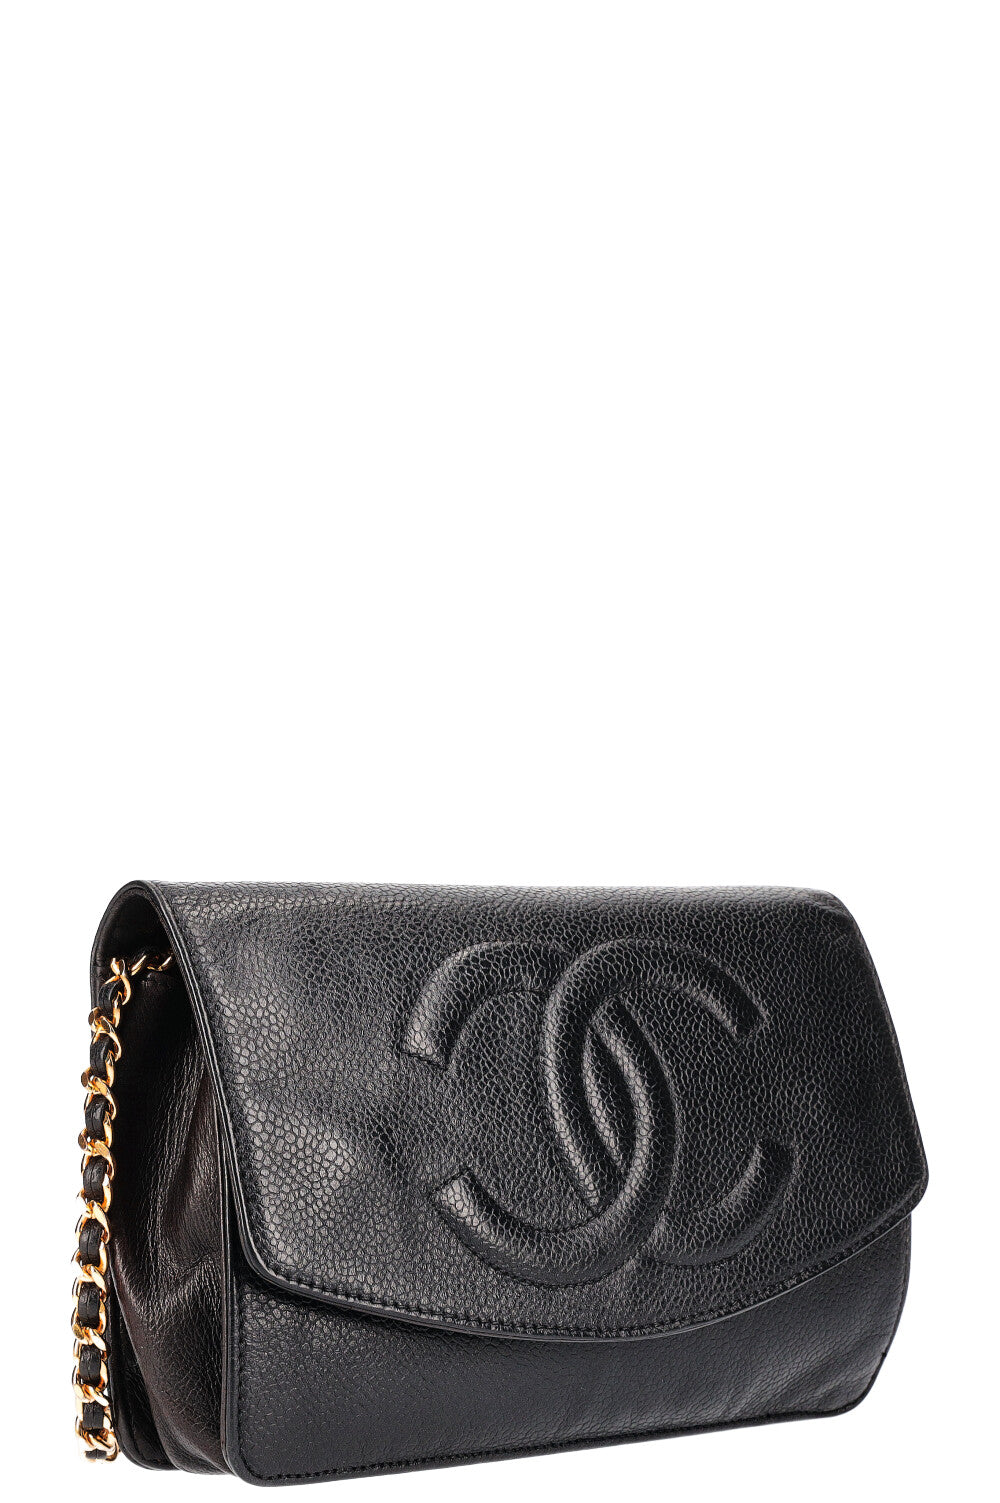 Chanel Vintage Chanel Black Caviar Leather Wallet On Long Shoulder